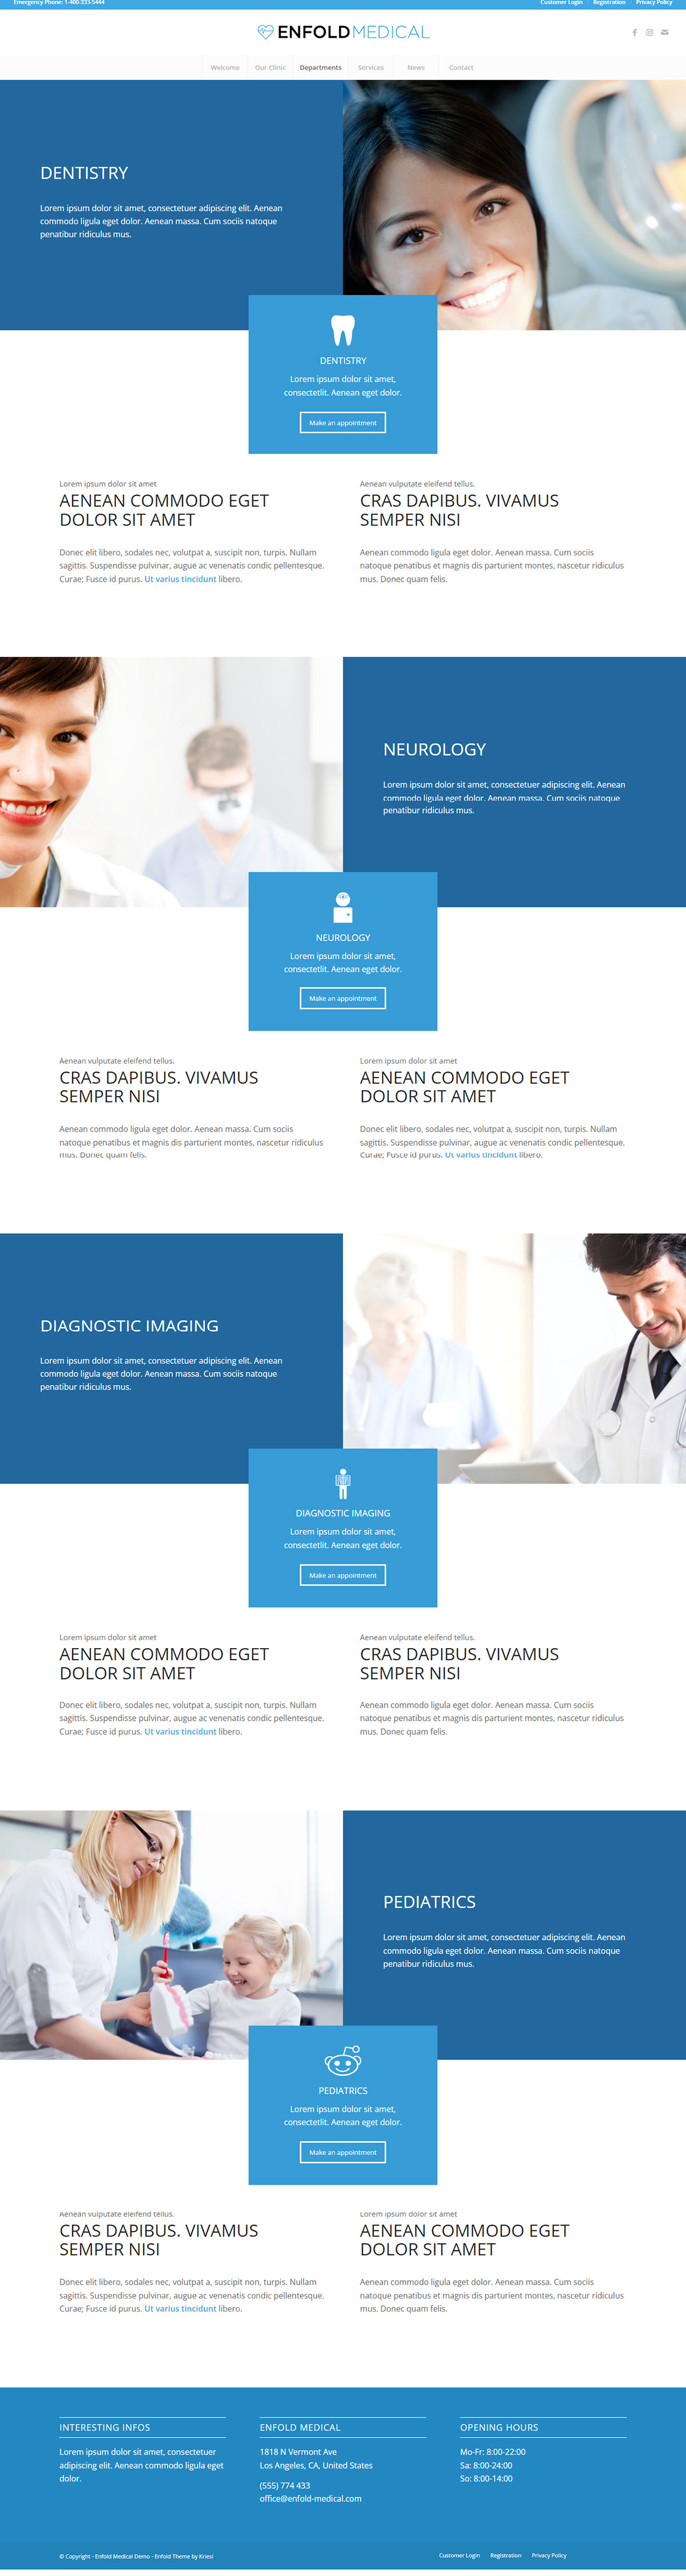 Medical Website Design rendition image